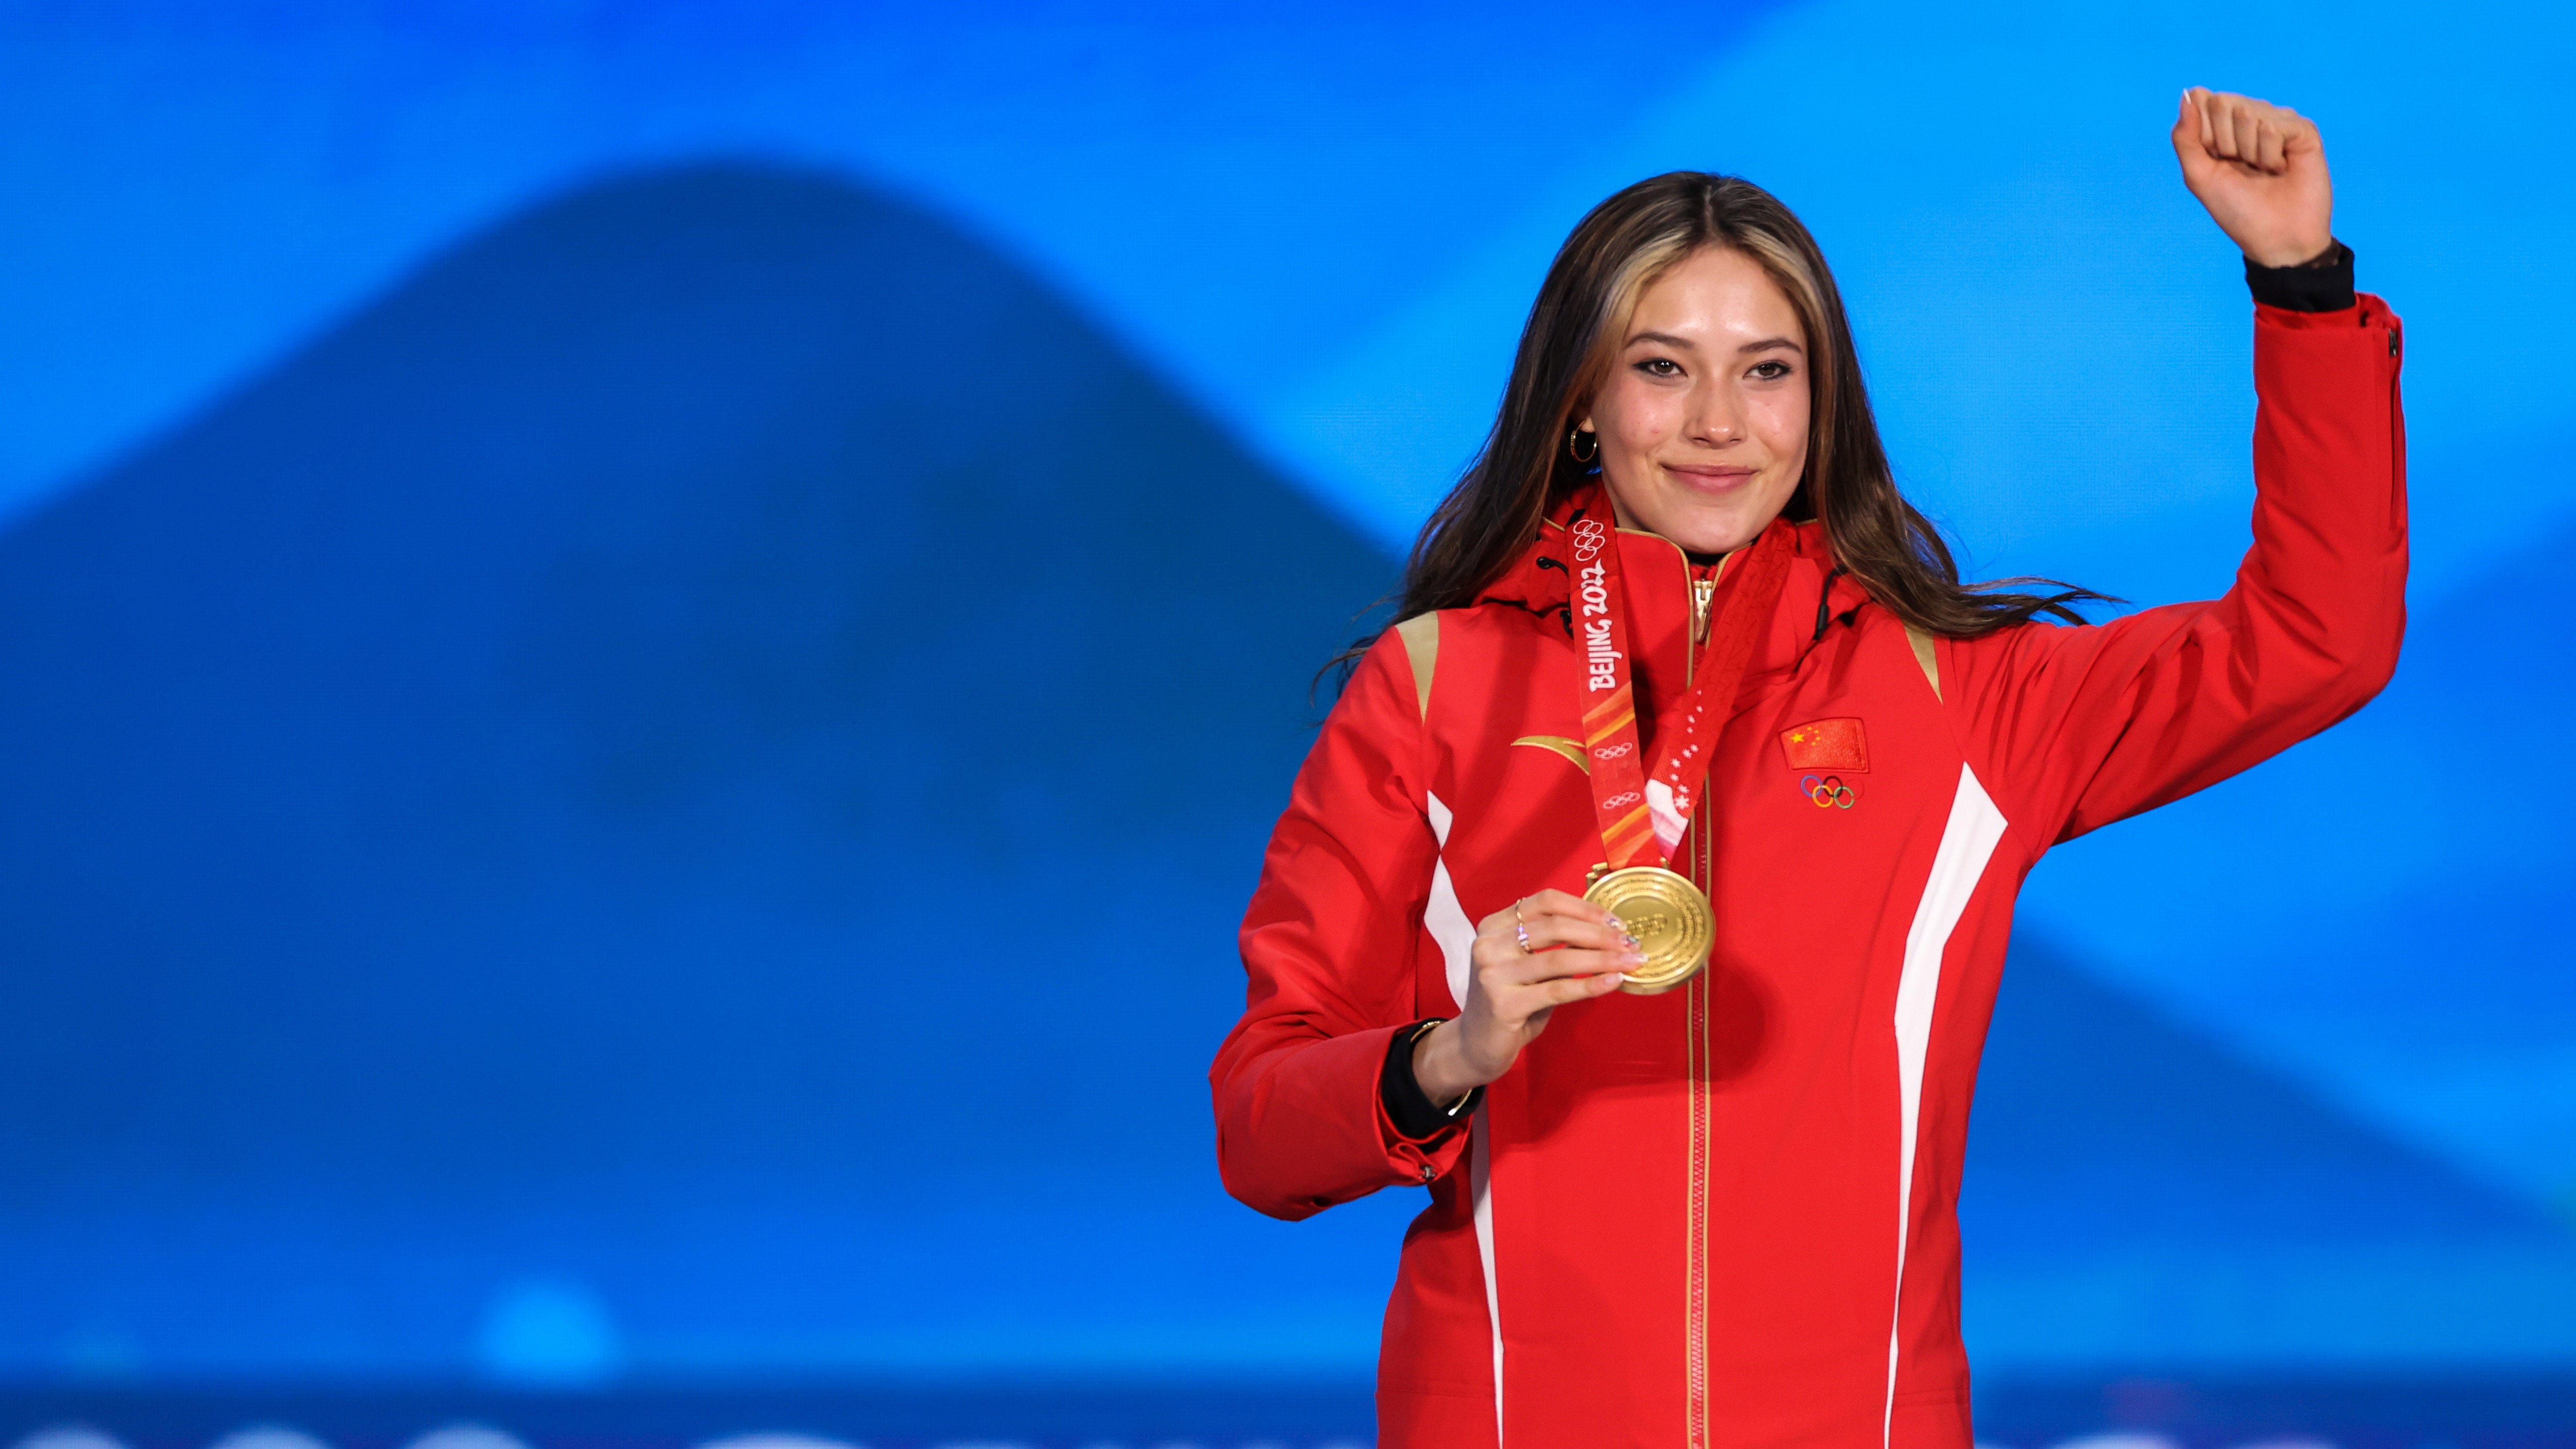 Eileen Gu's citizenship status a focus after winning Olympic gold